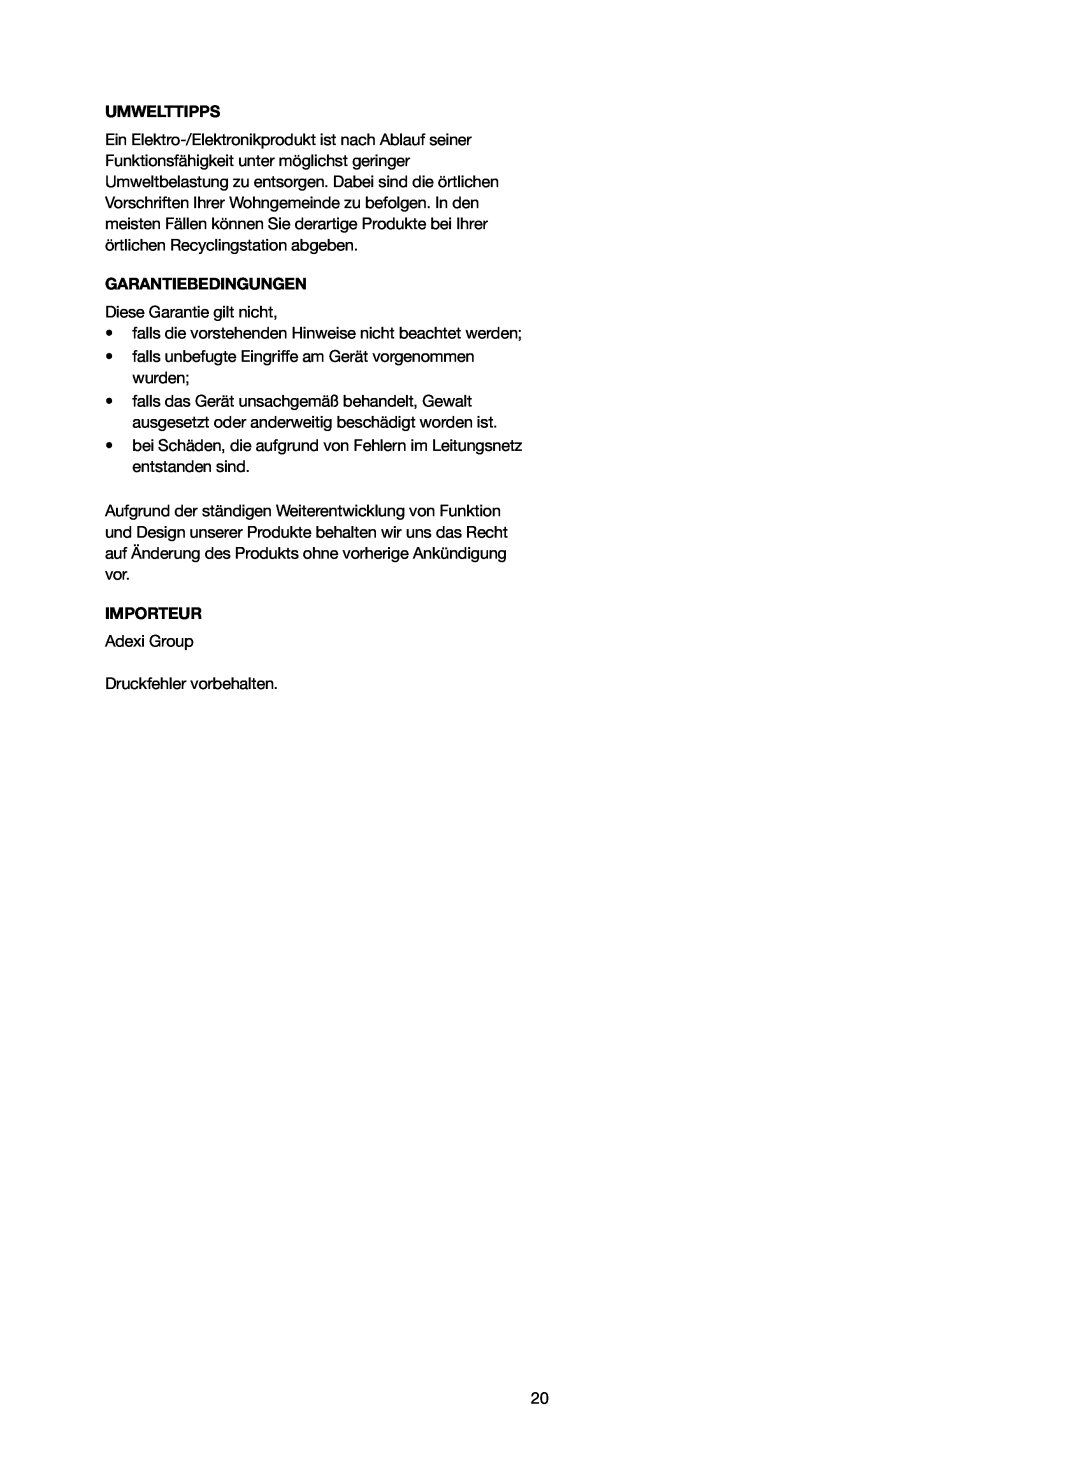 Melissa 246-016 manual Umwelttipps, Garantiebedingungen, Importeur 